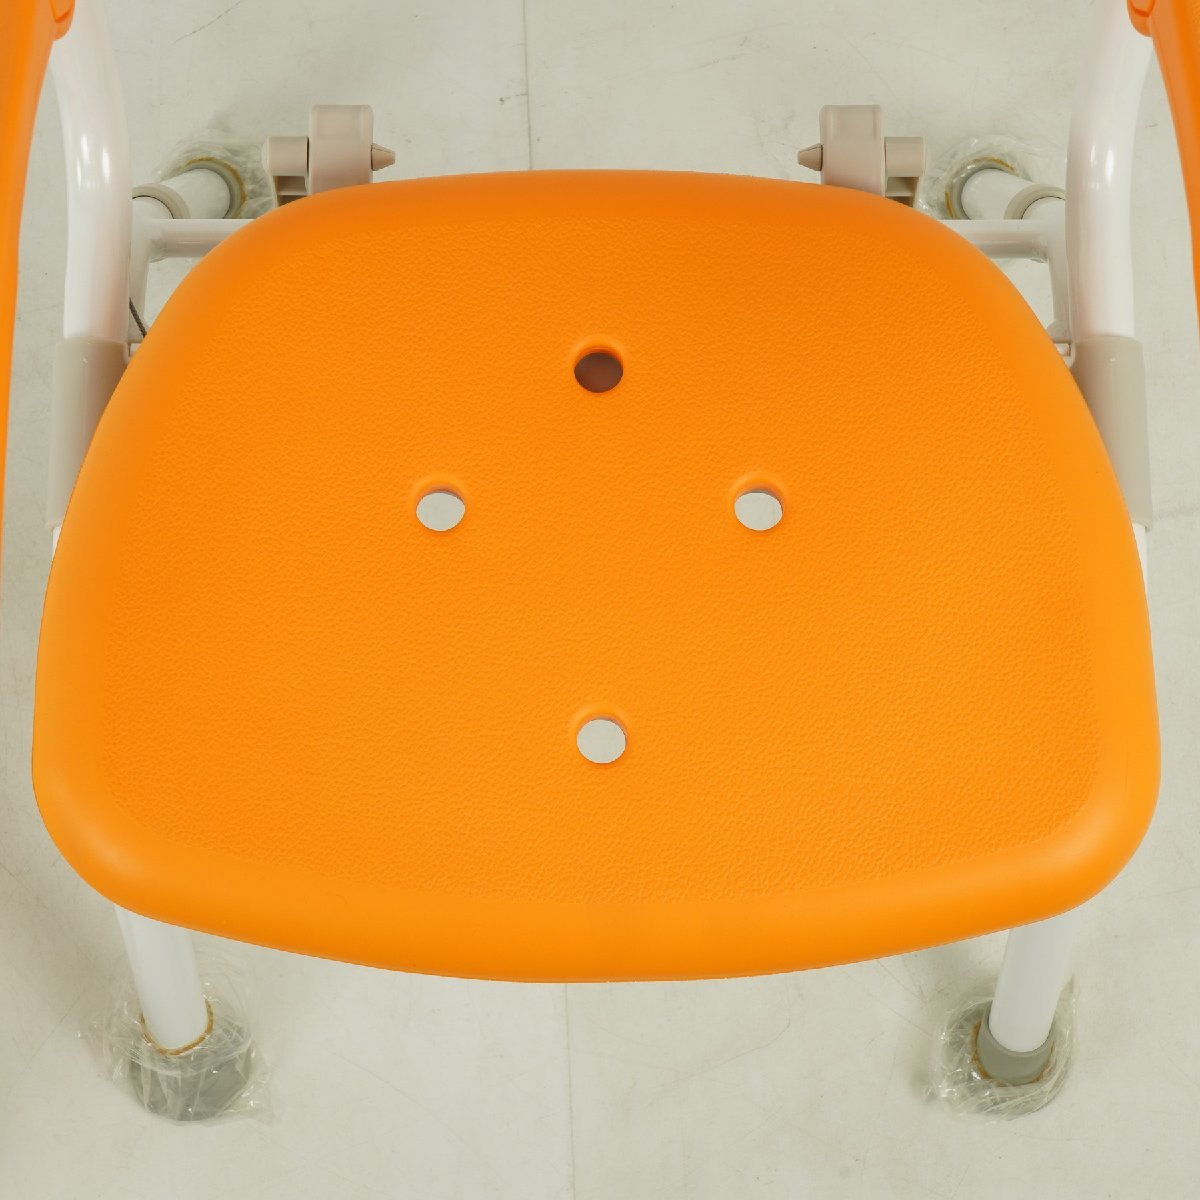 Panasonic シャワーチェア・浴槽台セット/ミドルＳＰワンタッチおりたたみN:PN-L41821 Dオレンジ 背もたれ・ひじかけタイプ [F6027]_画像6